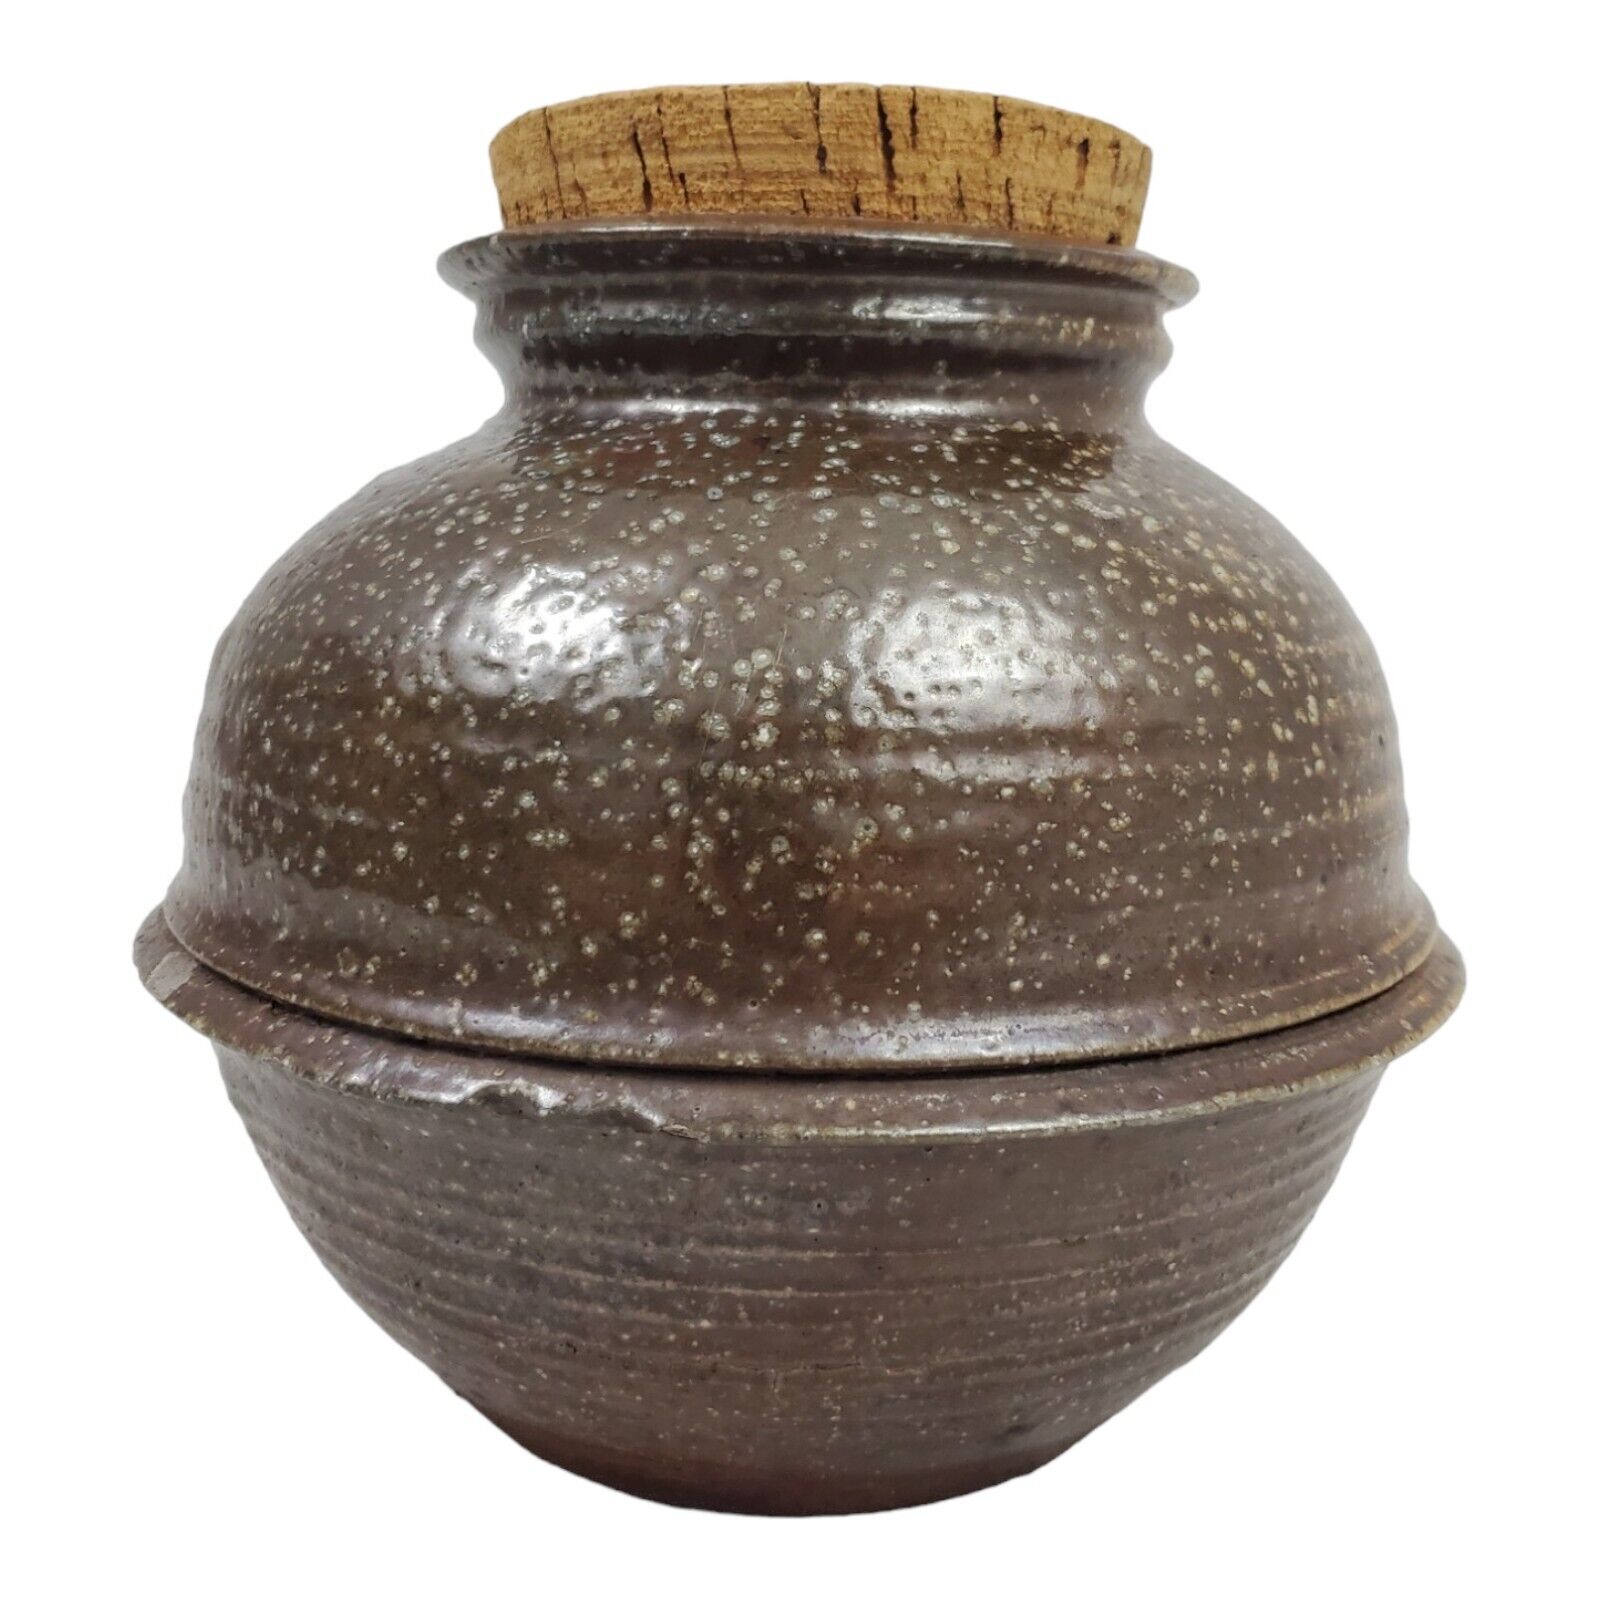 Antique Stonewear Canister Cookie Jar Jug Storage Primitive Salt Glazed Cork Lid